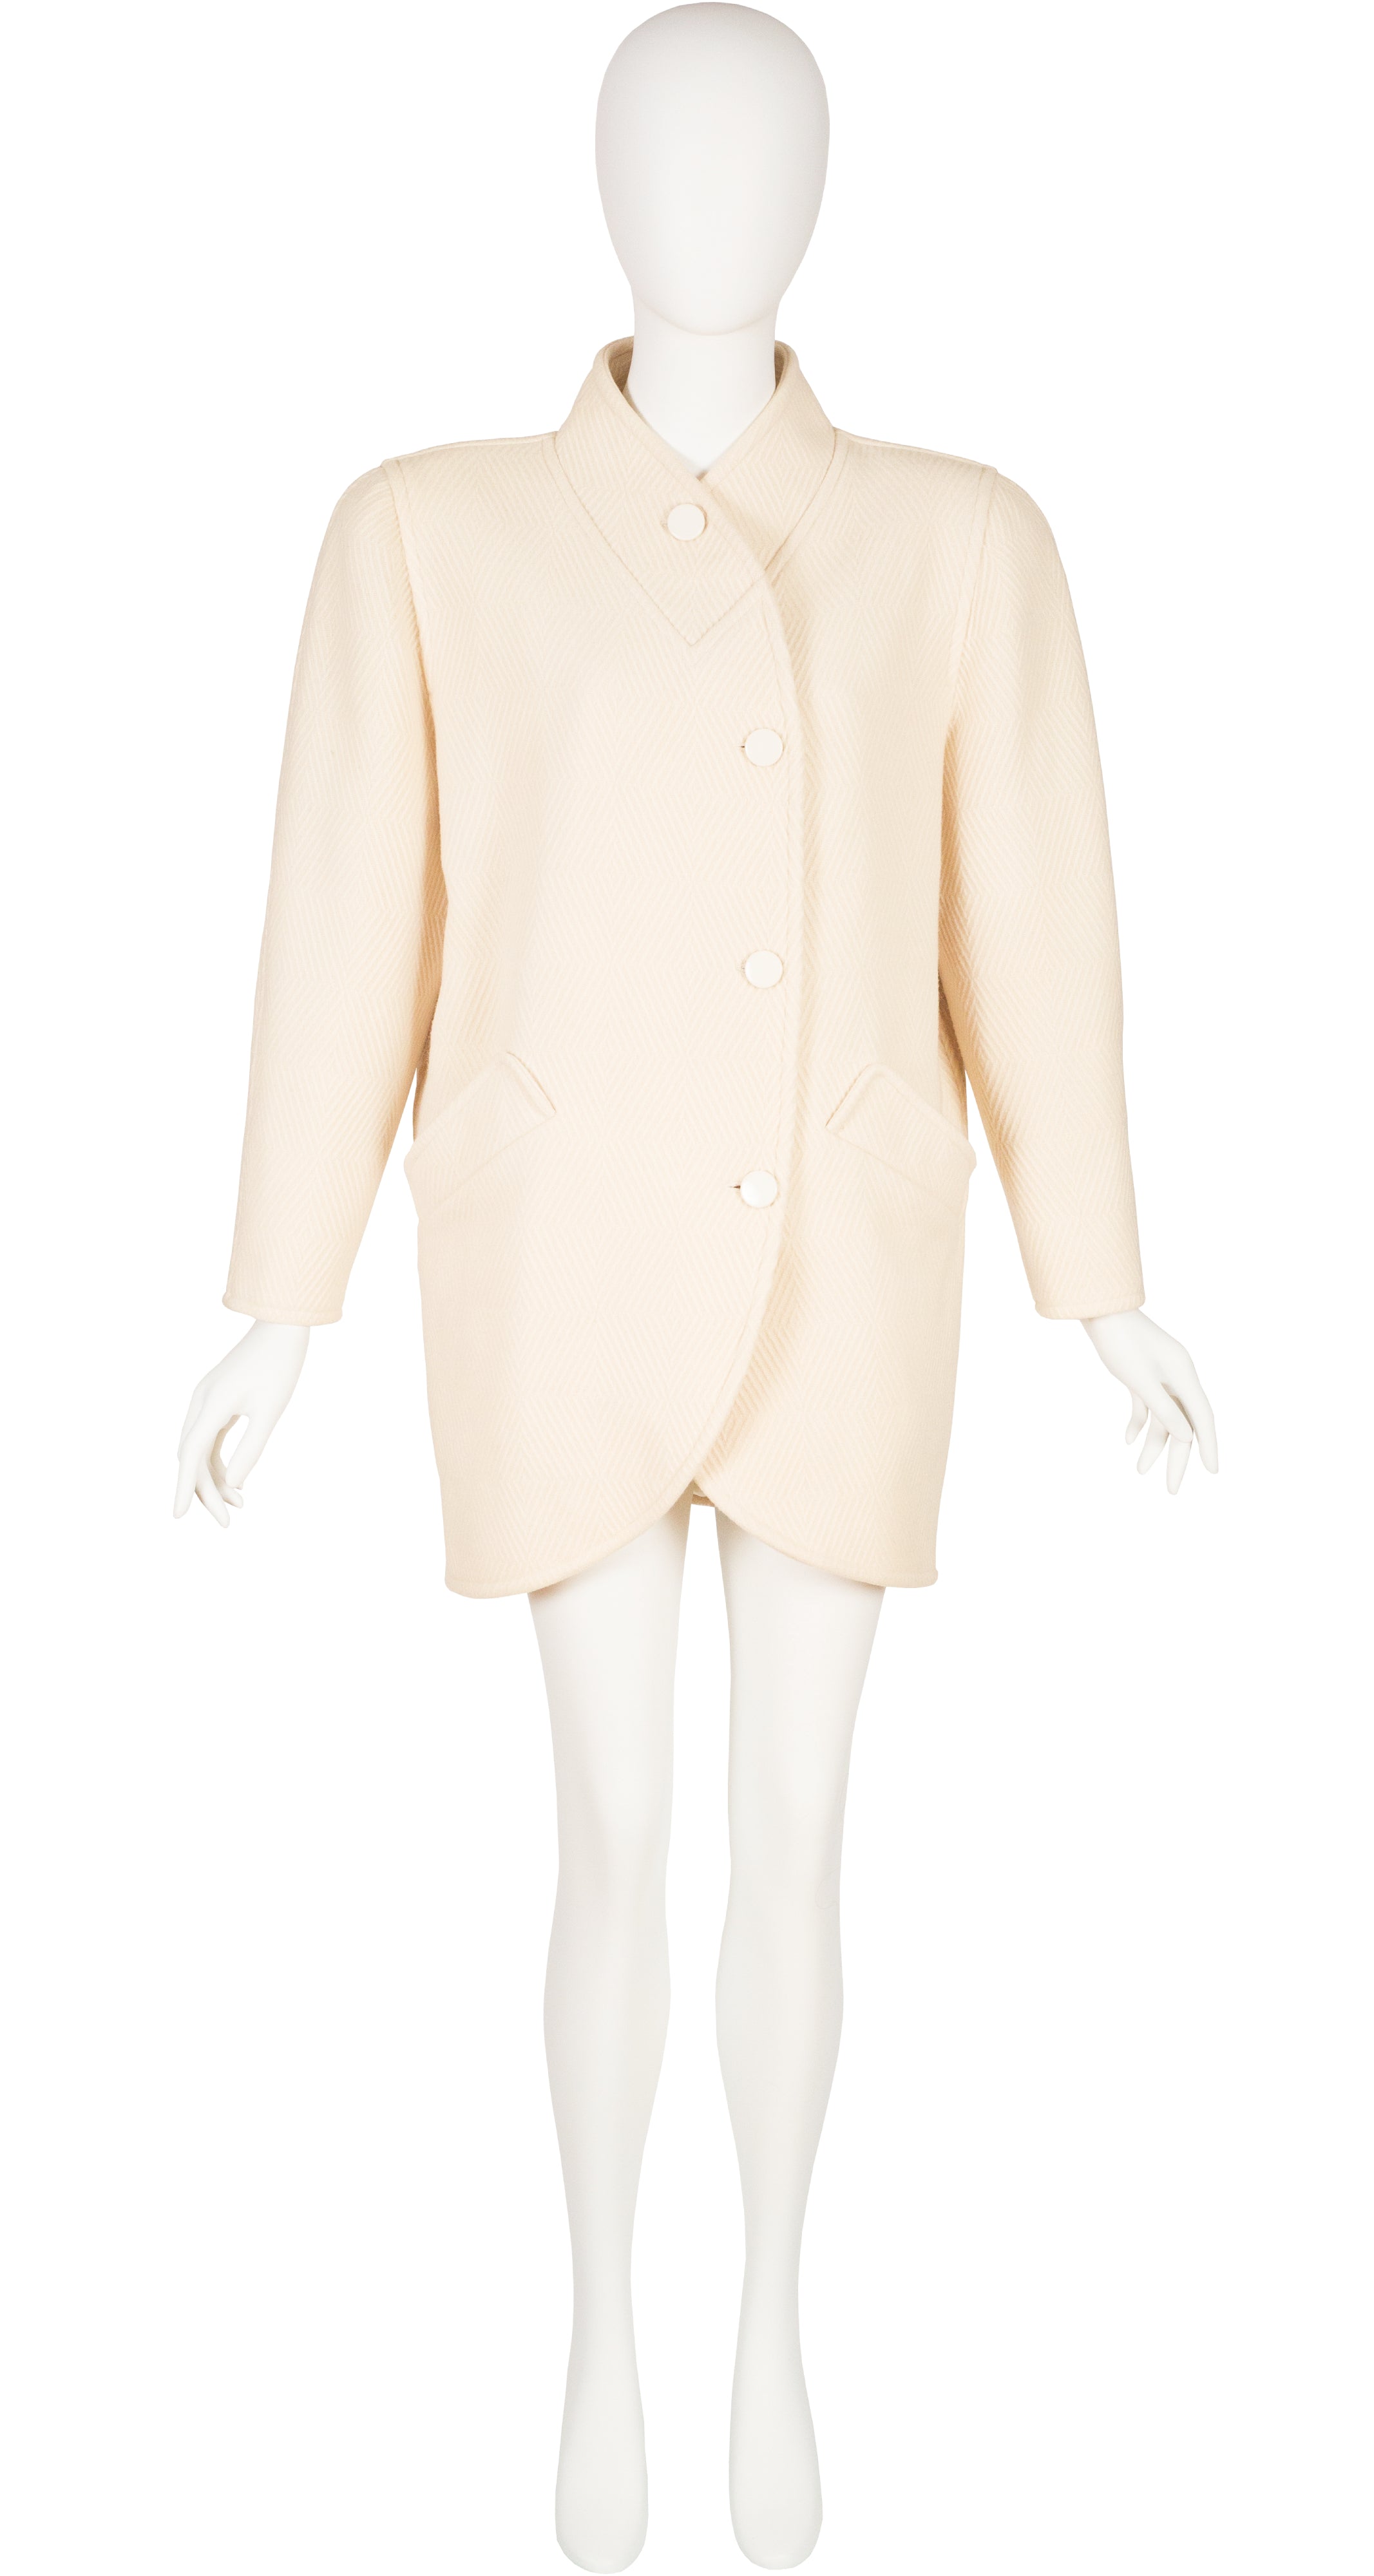 1980s Cream Wool Tapered Short Coat